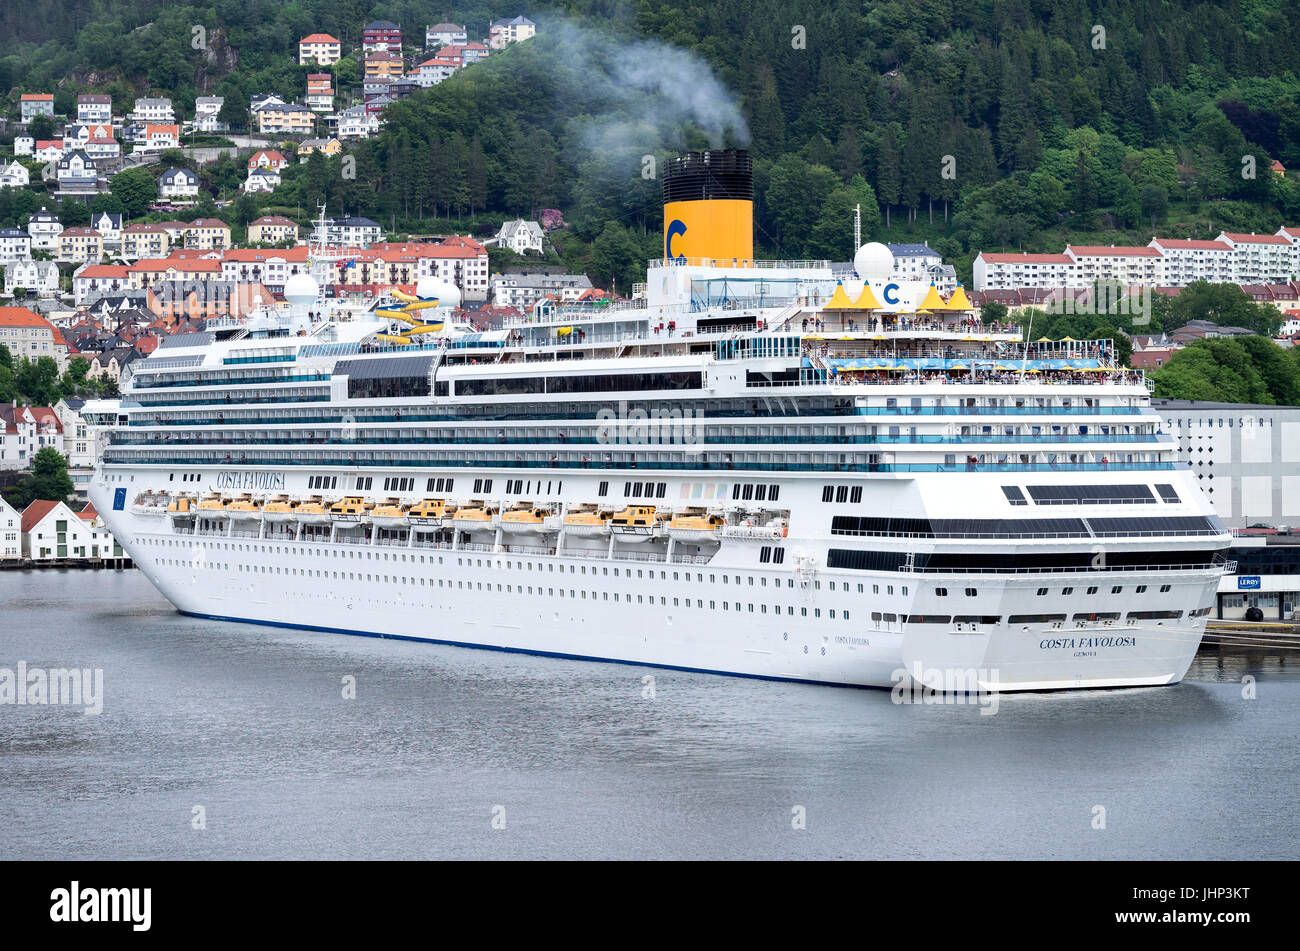 Sc favolosa costa di Bergen, Norvegia. Costa Crociere è un italiano di  linea di crociera, con sede in Genova e sotto il controllo del comando di  Carnival Corporation & plc Foto stock -